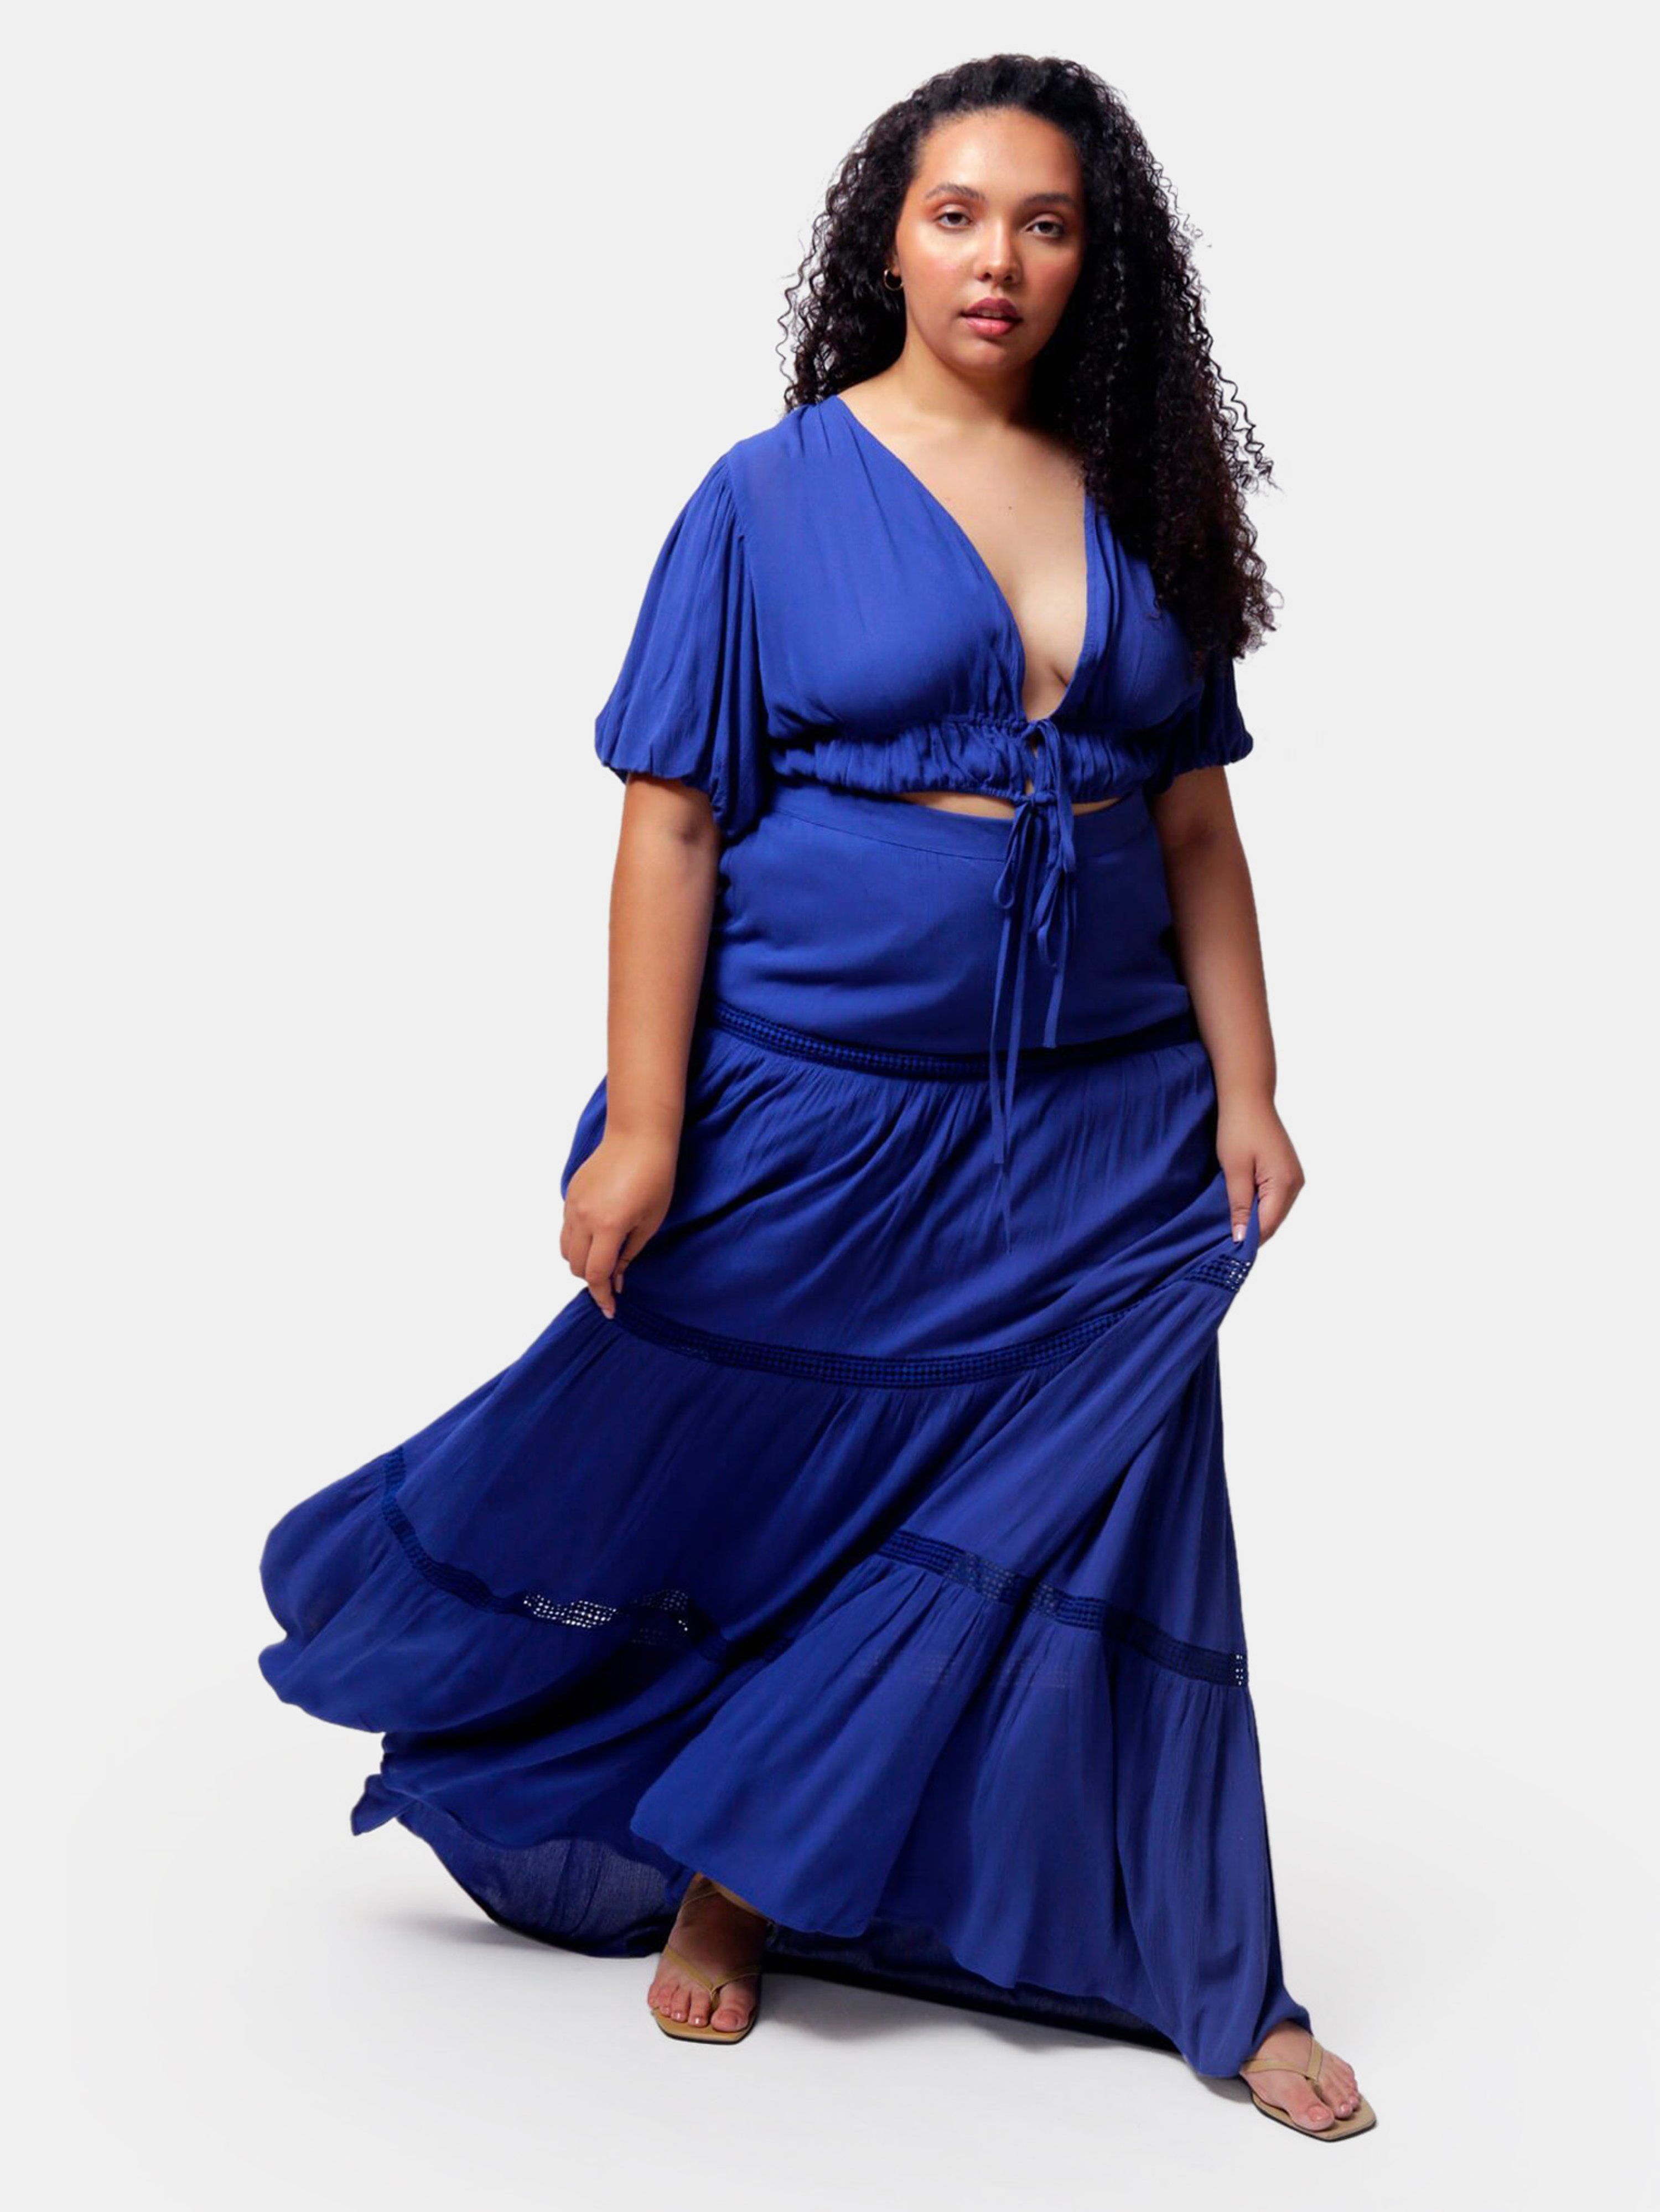 Mazarine Blue Aisha Crop Top And Maxi Skirt Two Piece Set - 4X (28W/30W) - Also in: 1X (16W/18W), 2X | Verishop